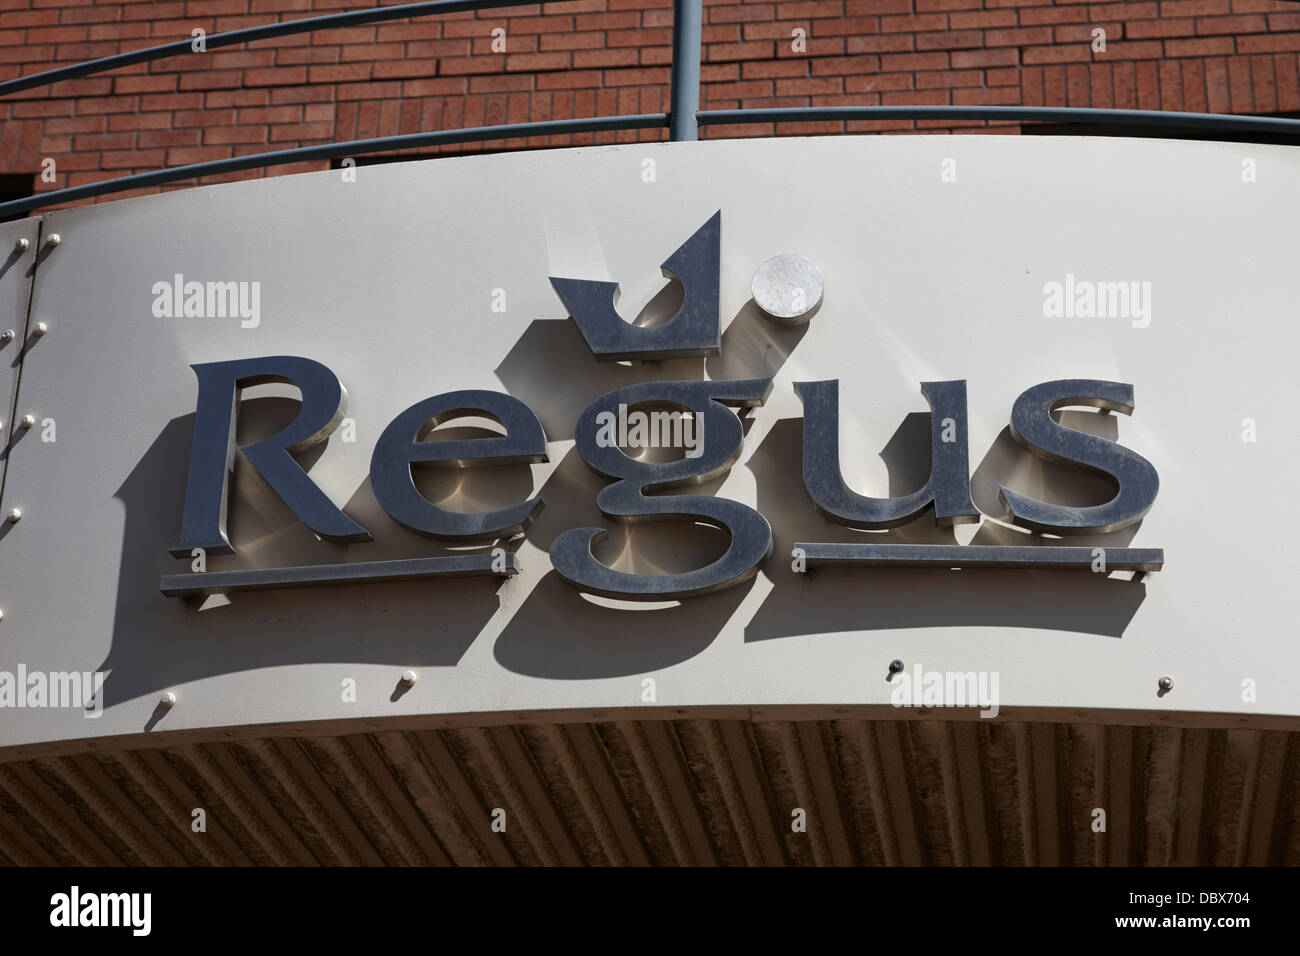 Logo pour centres d'affaires Regus plc Royaume-Uni Irlande du Nord Belfast Banque D'Images